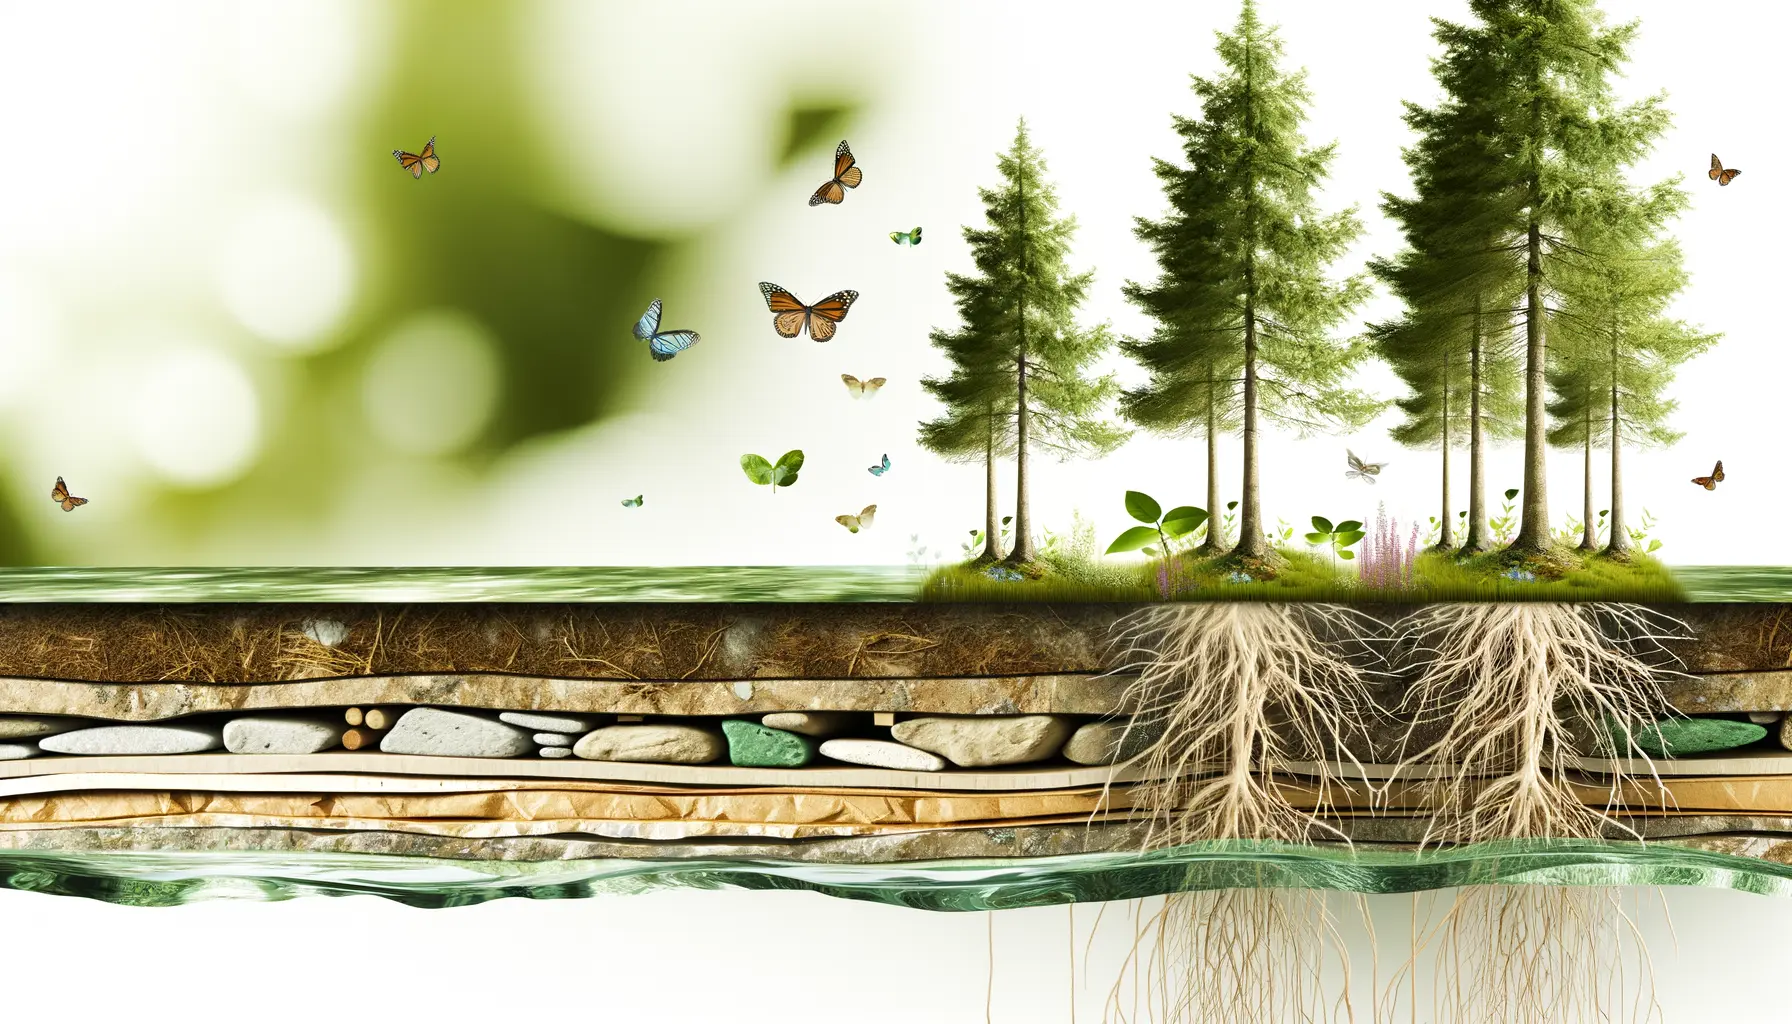 Querschnitt eines Waldes mit Fokus auf nachhaltige Materialien und Prozesse